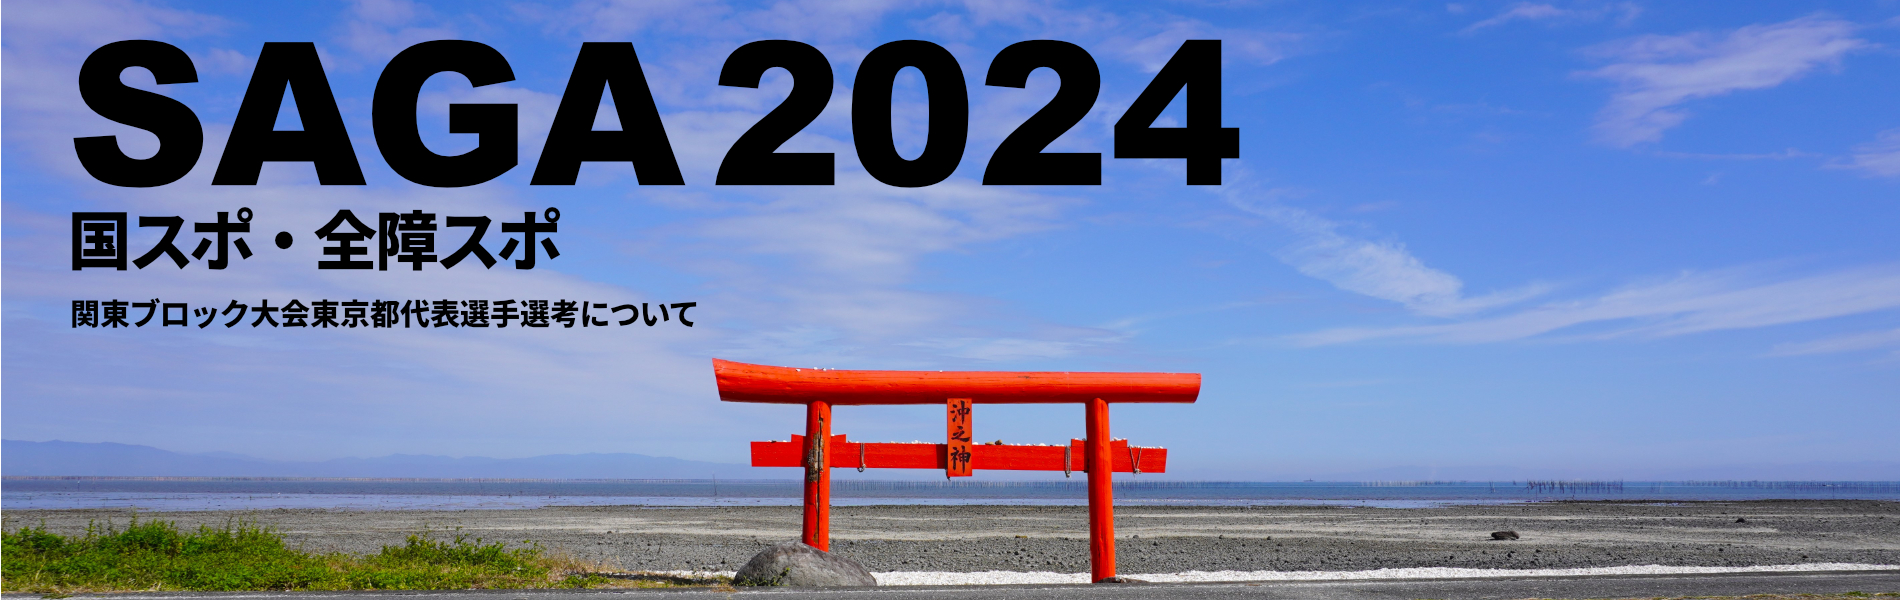 SAGA2024国スポ・全障スポ　関東ブロック大会東京都代表選手選考について